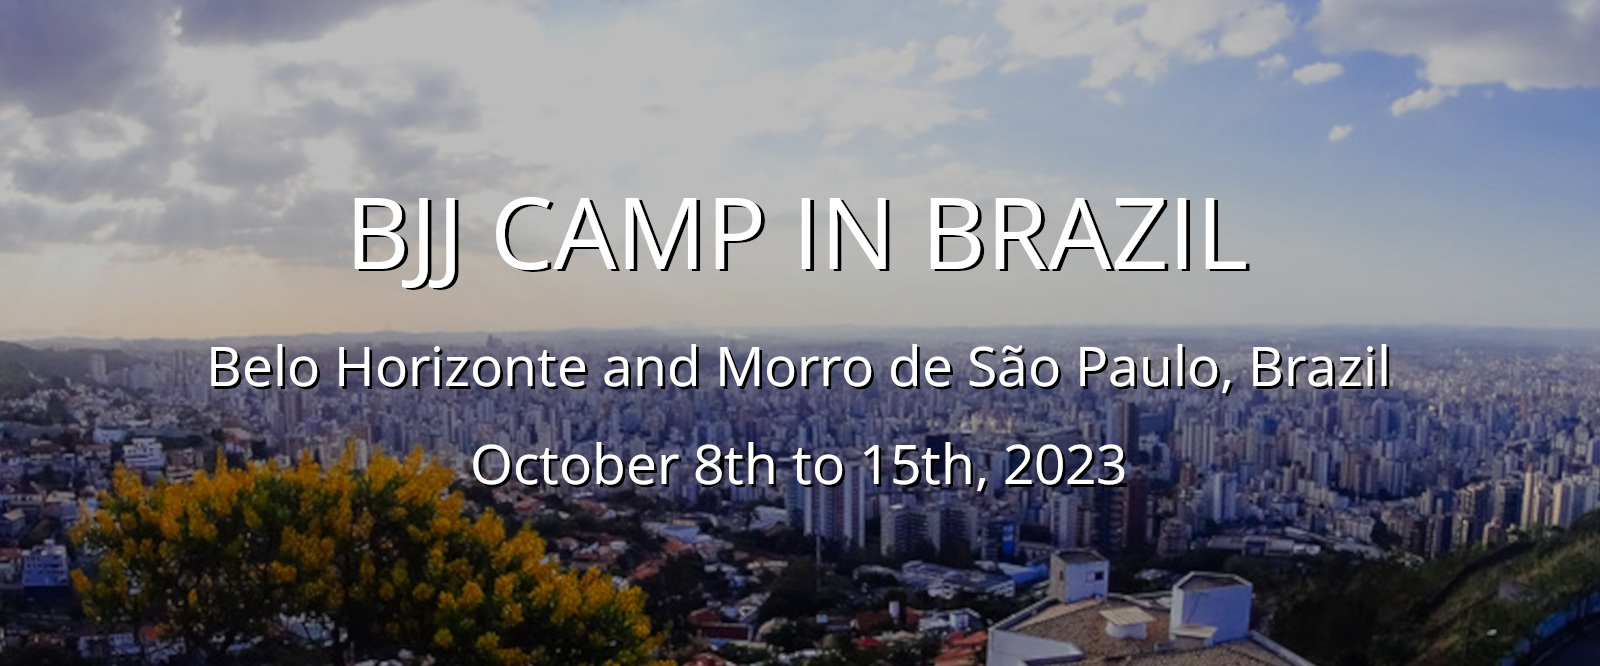 BJJ CAMP IN BRAZIL